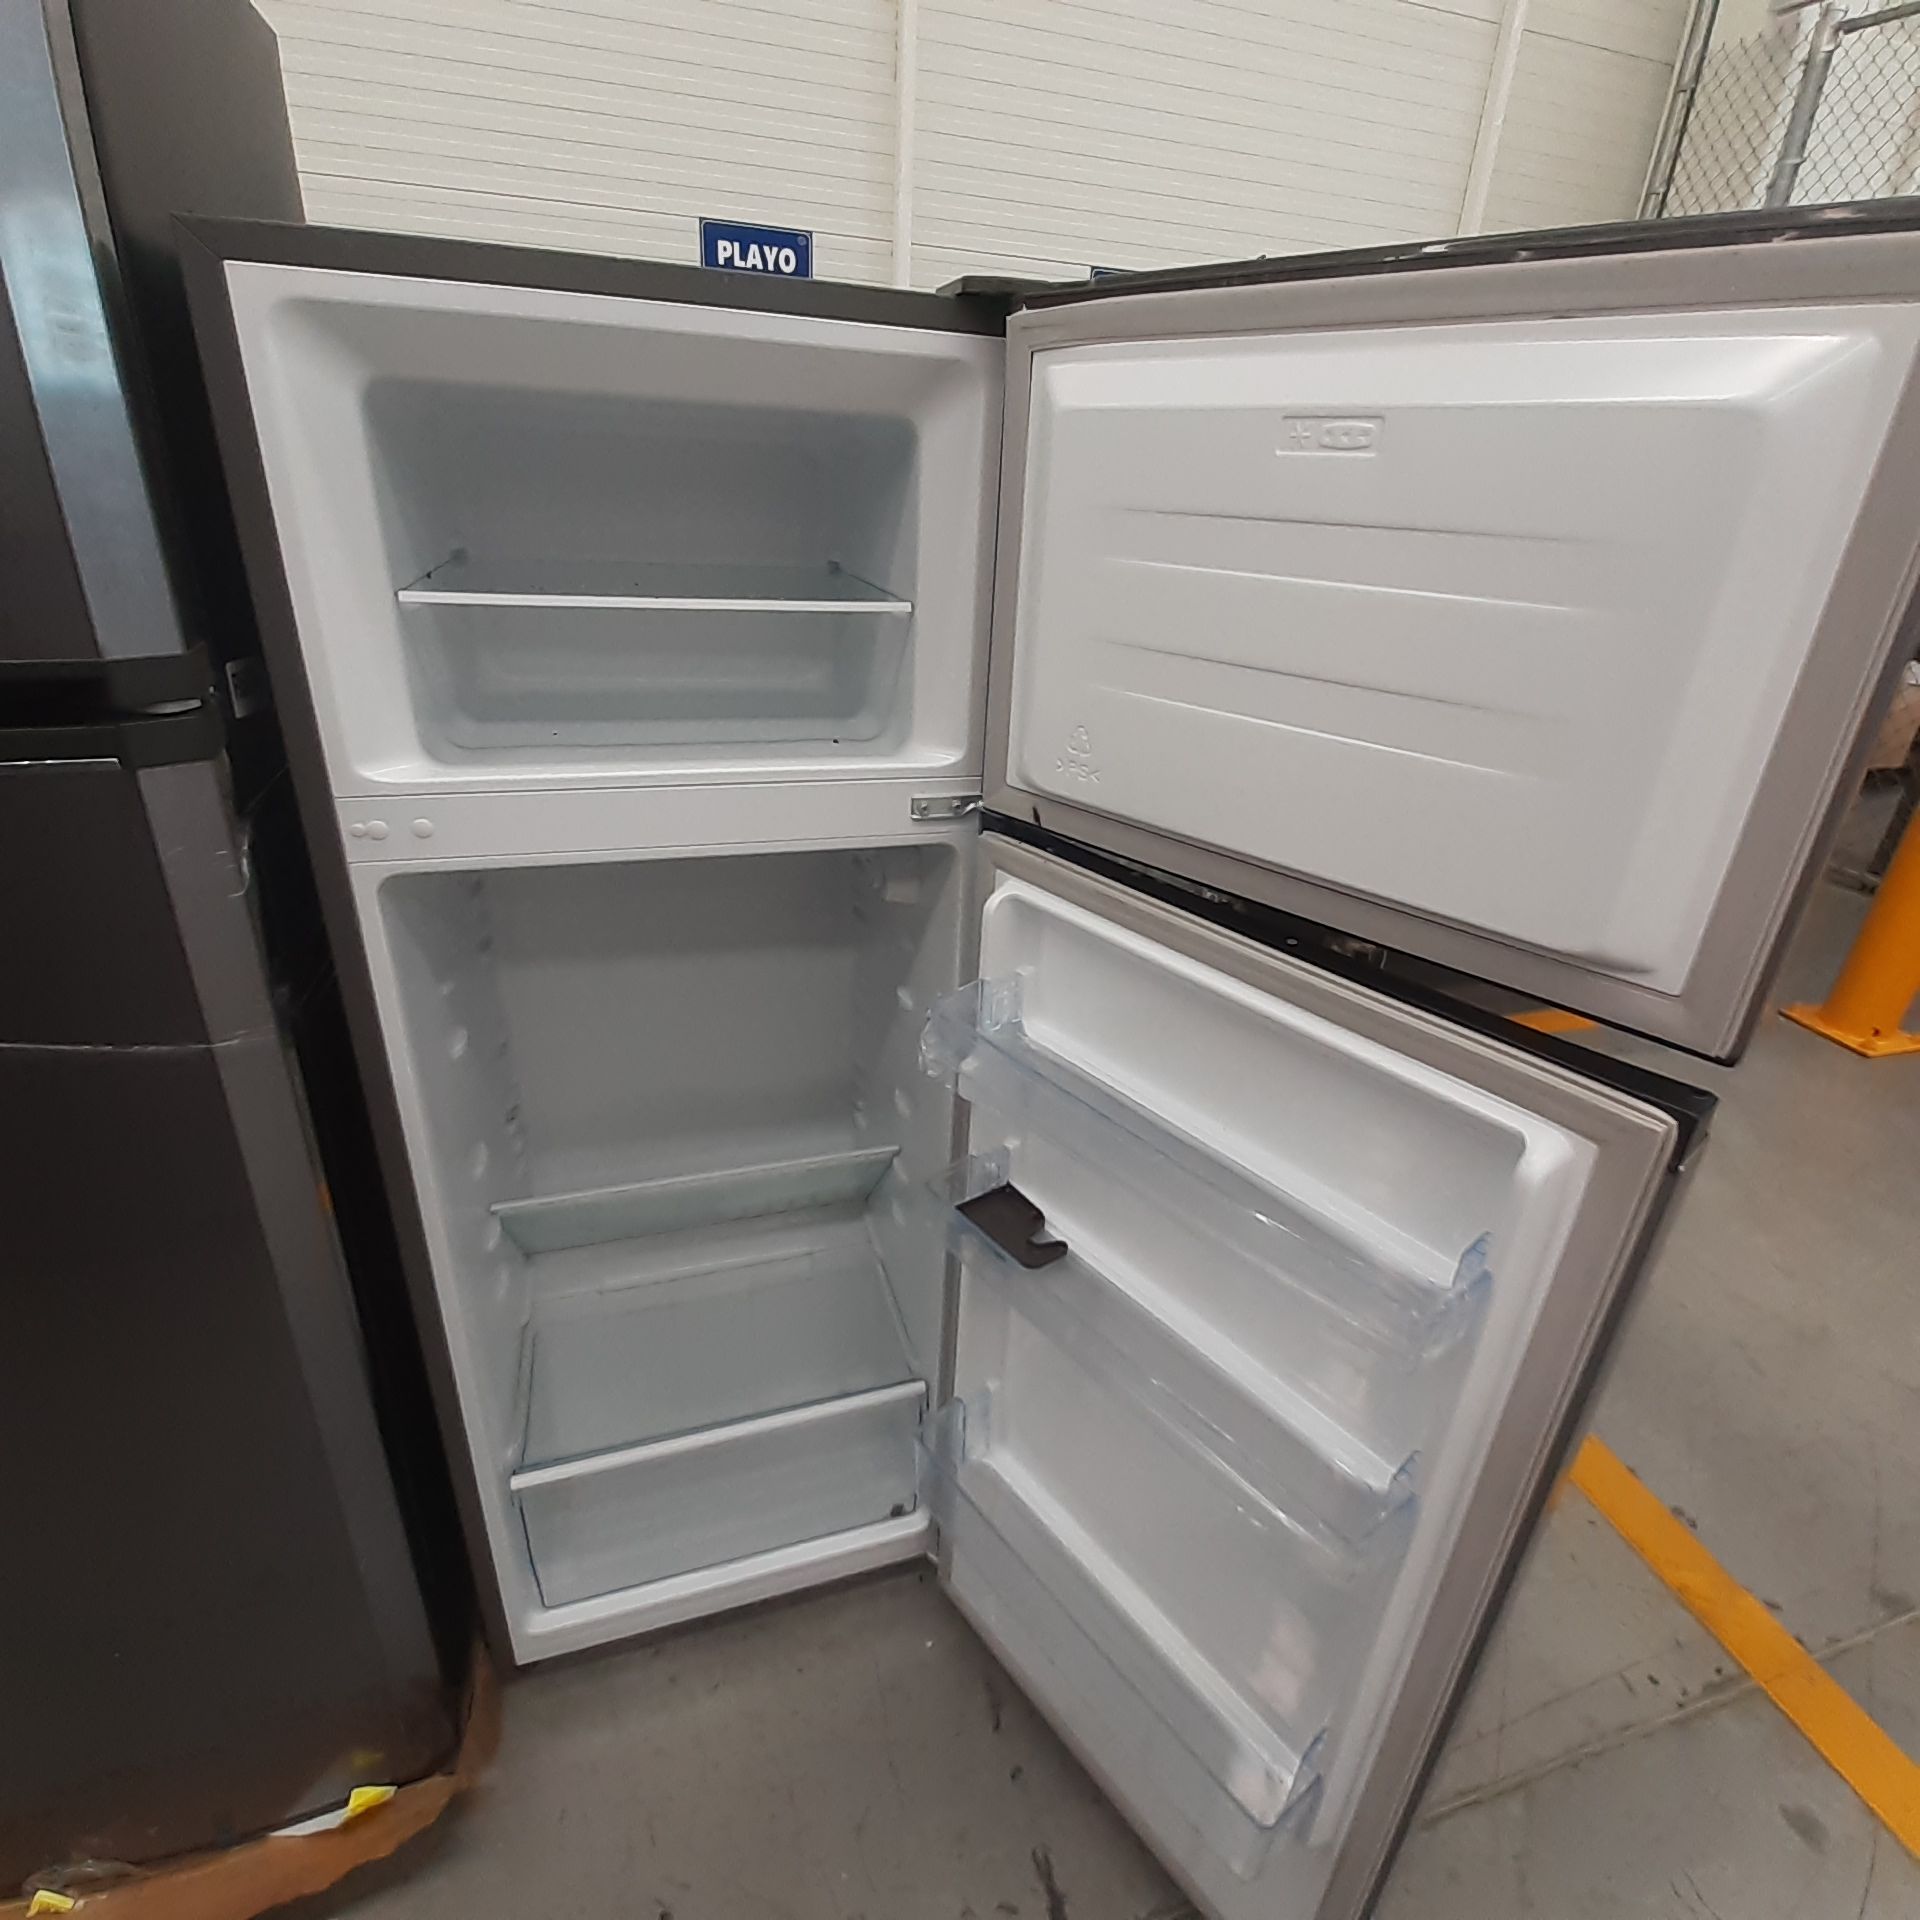 Lote De 2 Refrigeradores Contiene: 1 Refrigerador Marca Mabe, 1 Refrigerador Marca Hisense, Distinto - Image 10 of 14